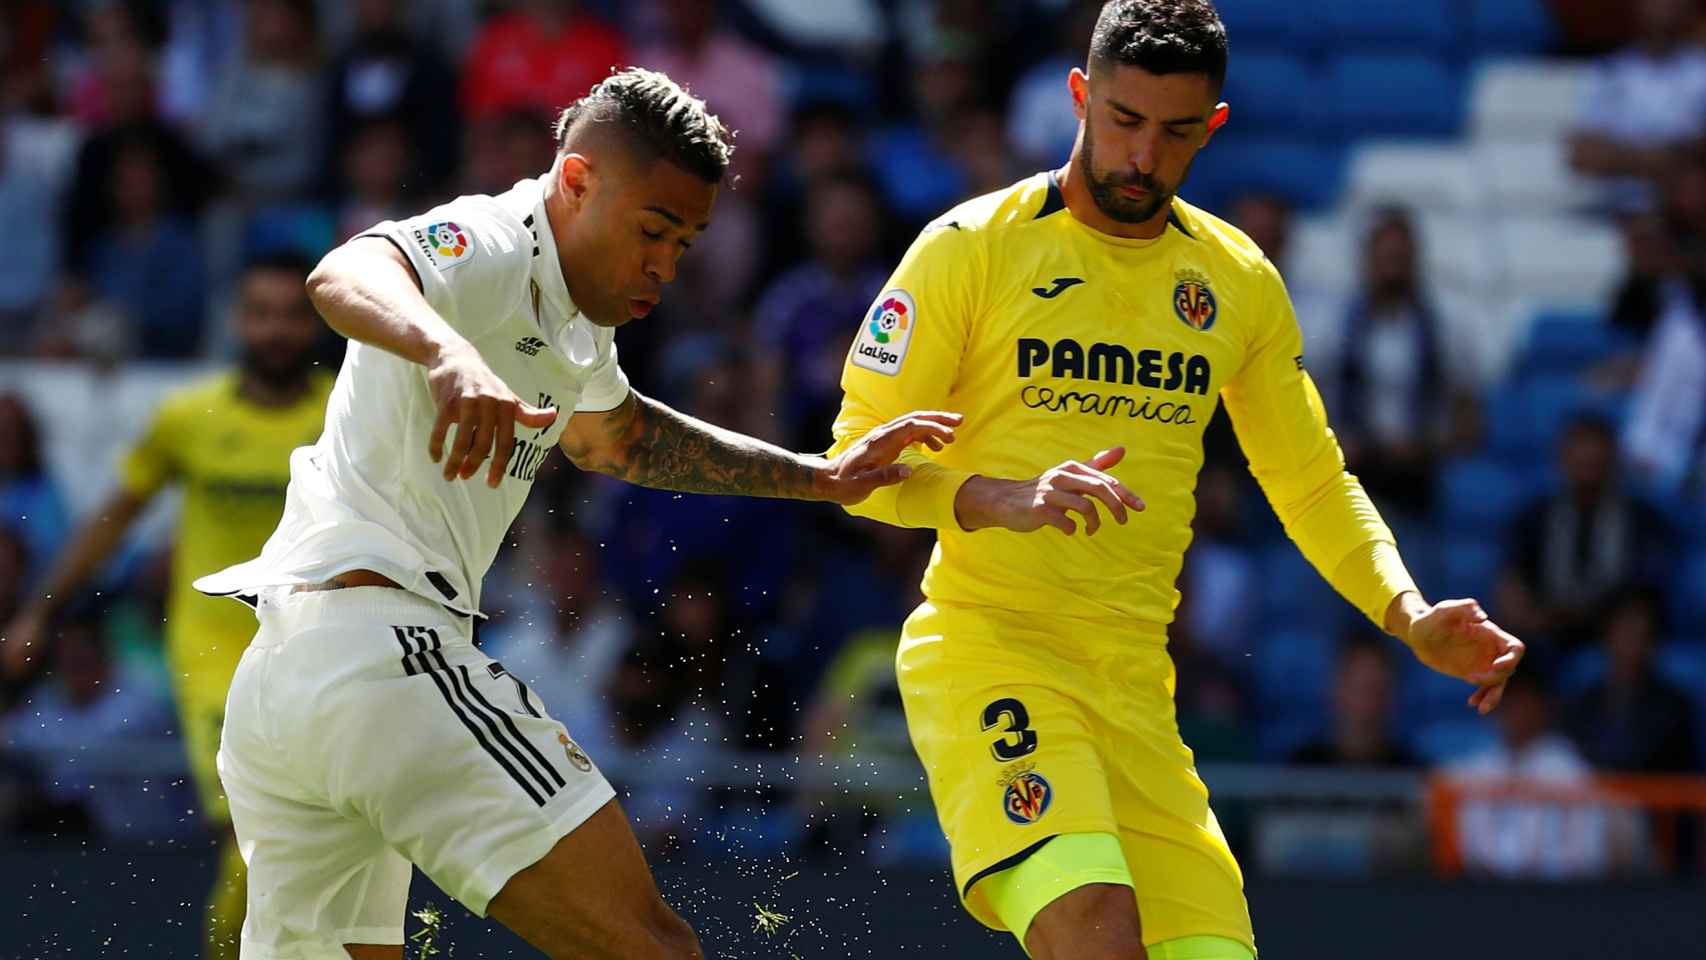 Mariano dispara a portería y marca el primer gol del Madrid al Villarreal